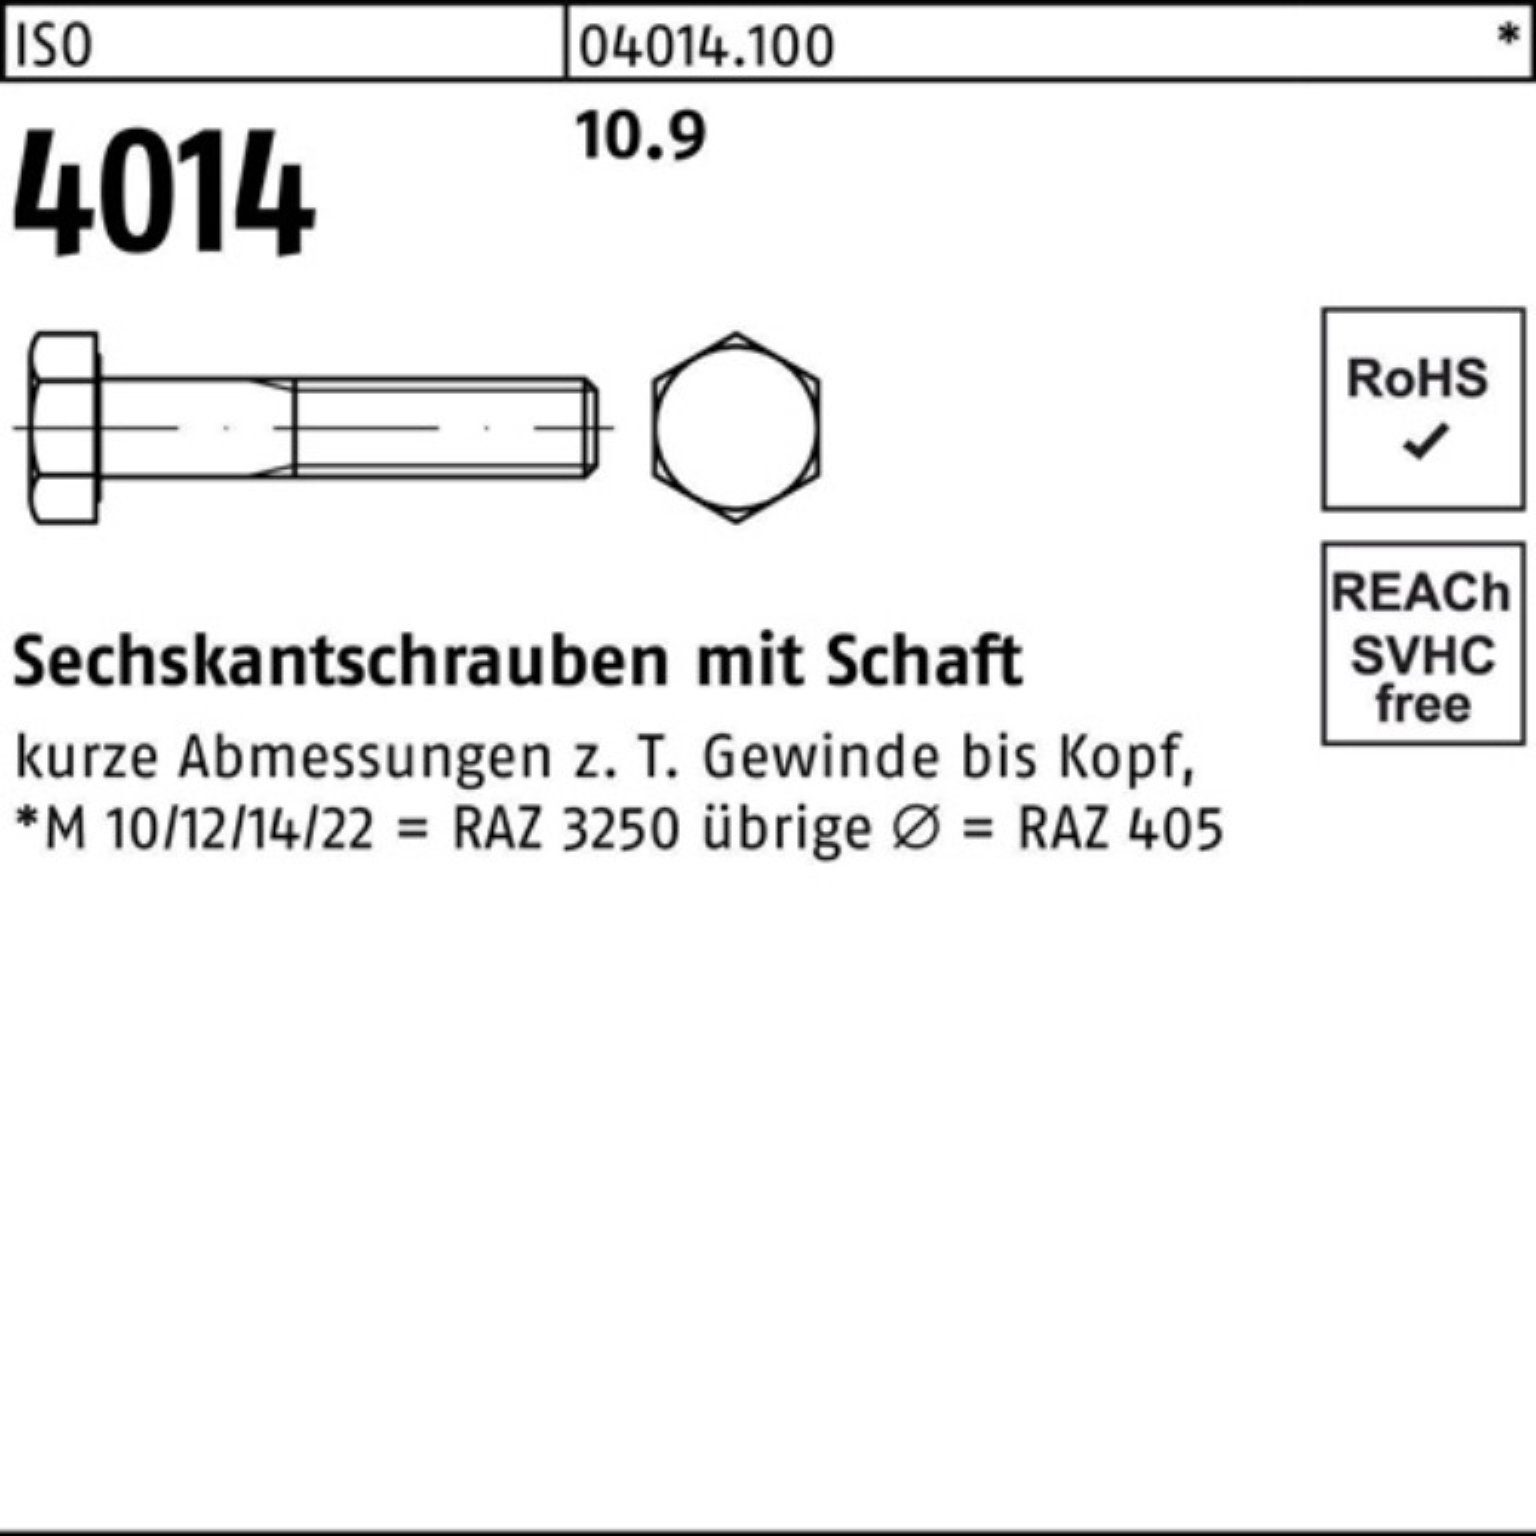 ISO Sechskantschraube 4014 M39x Bufab Stück IS Sechskantschraube 100er 150 1 10.9 Pack Schaft